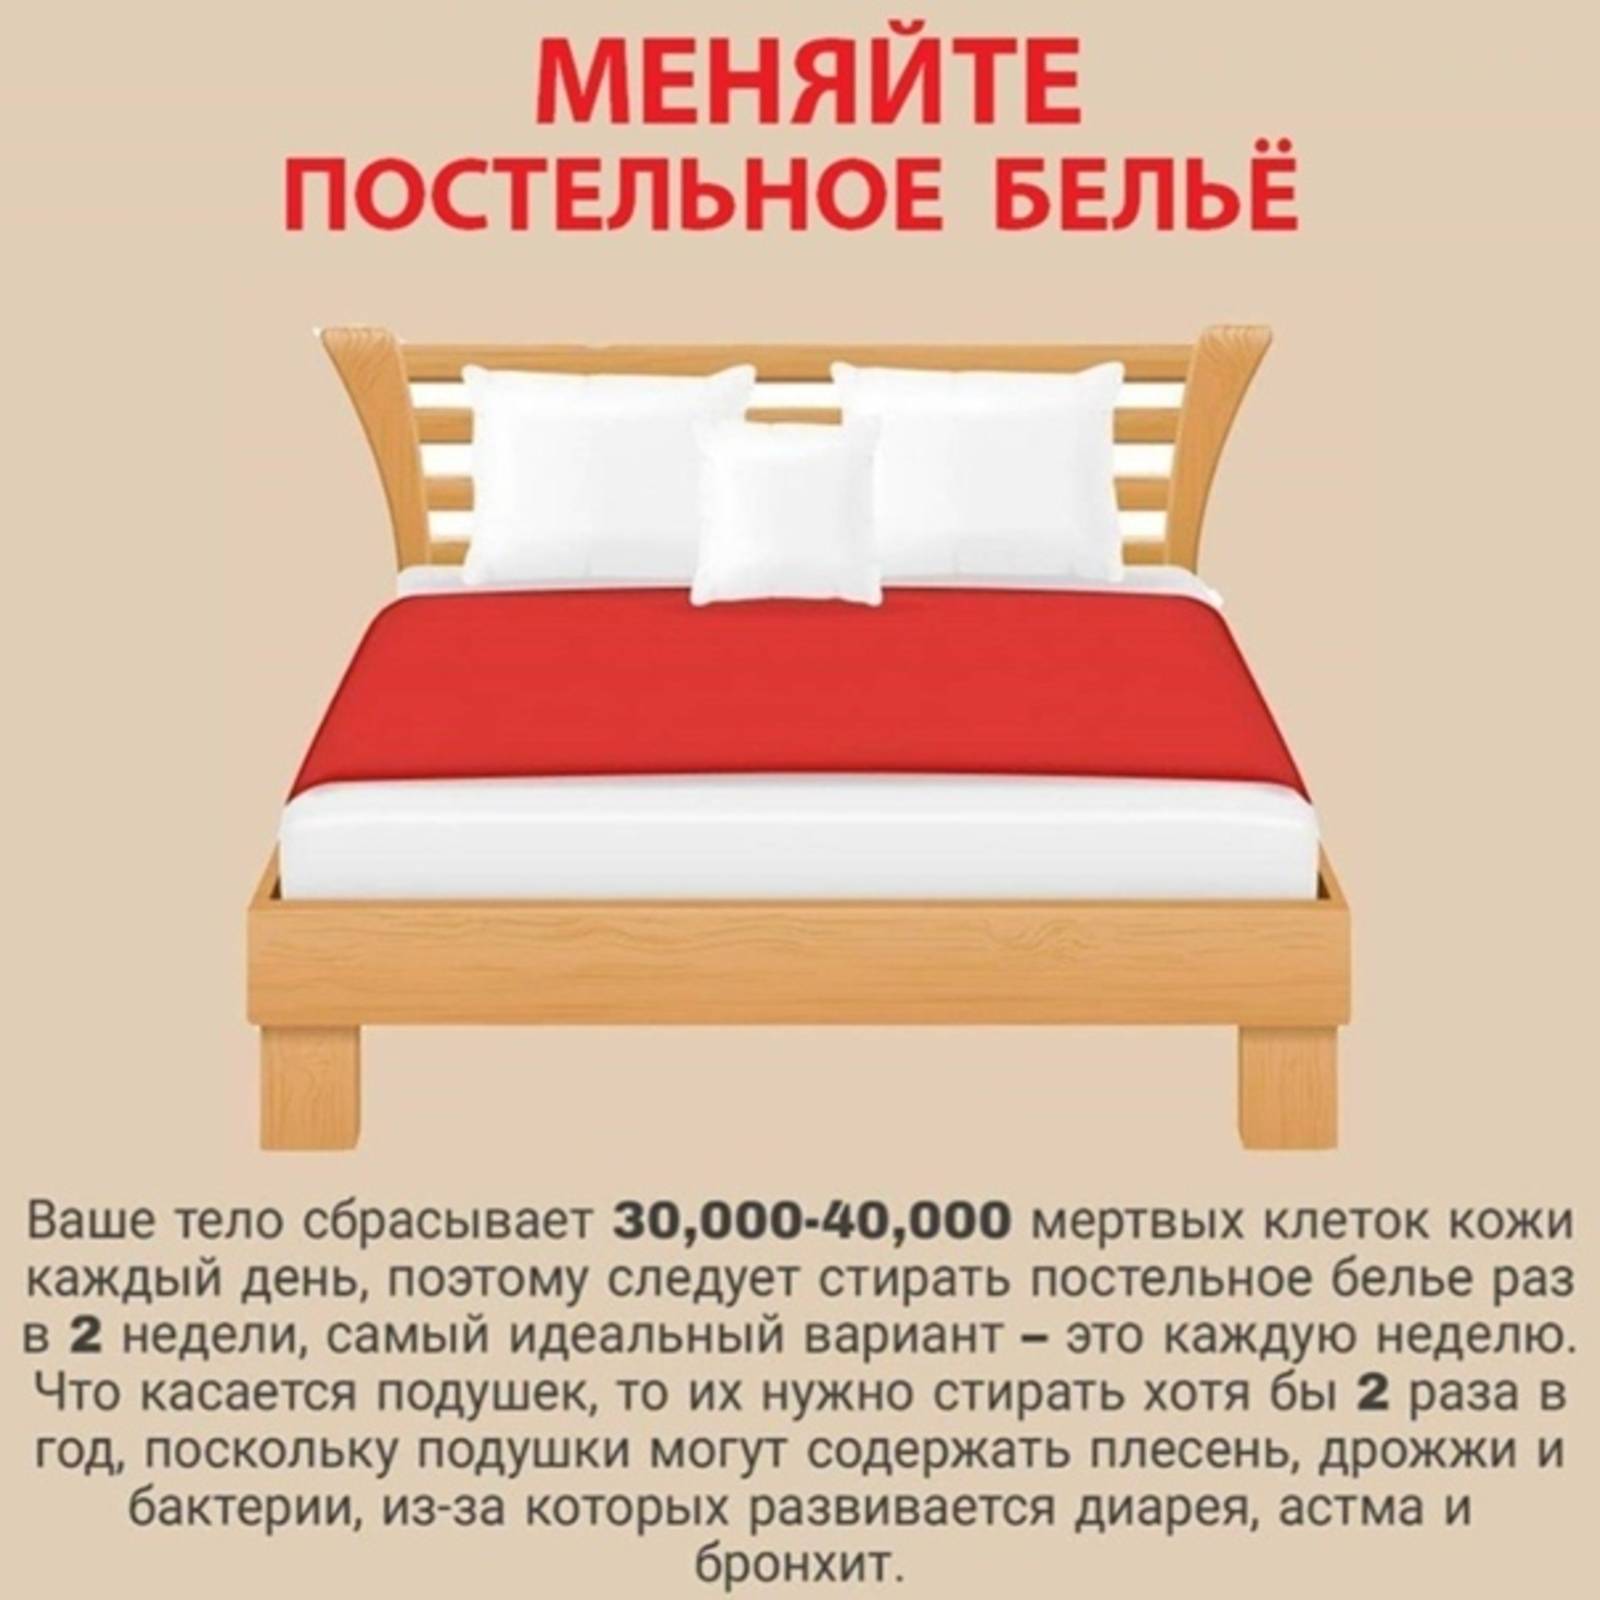 Приметы про постельное белье | безполитики.ру